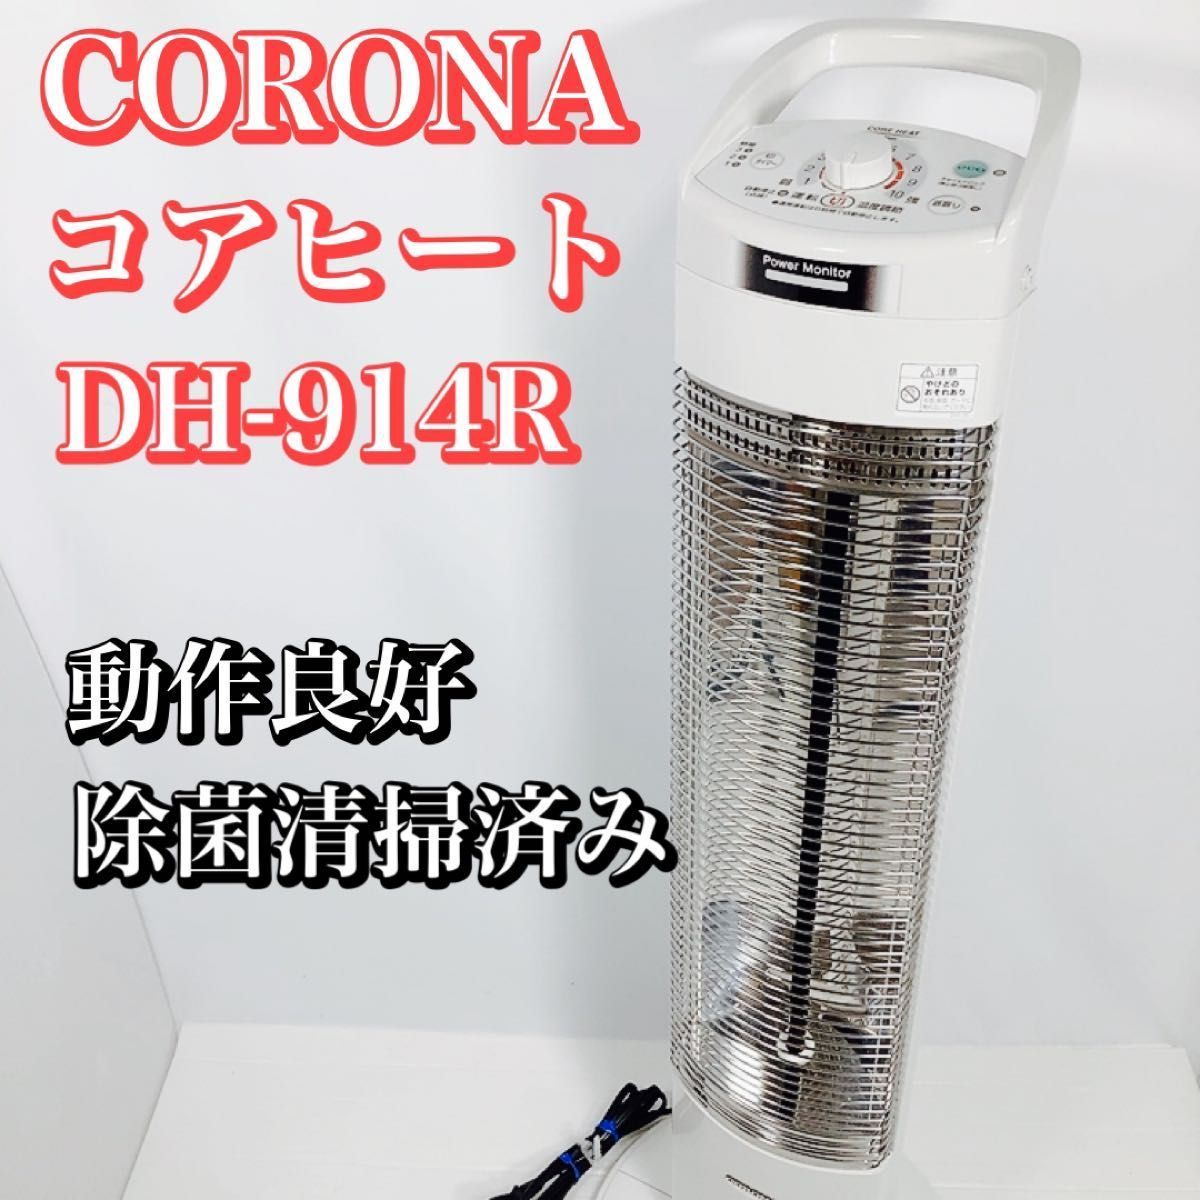 CORONA コロナ コアヒートスリム DH-914R-W 遠赤外線ヒーター 900W ...